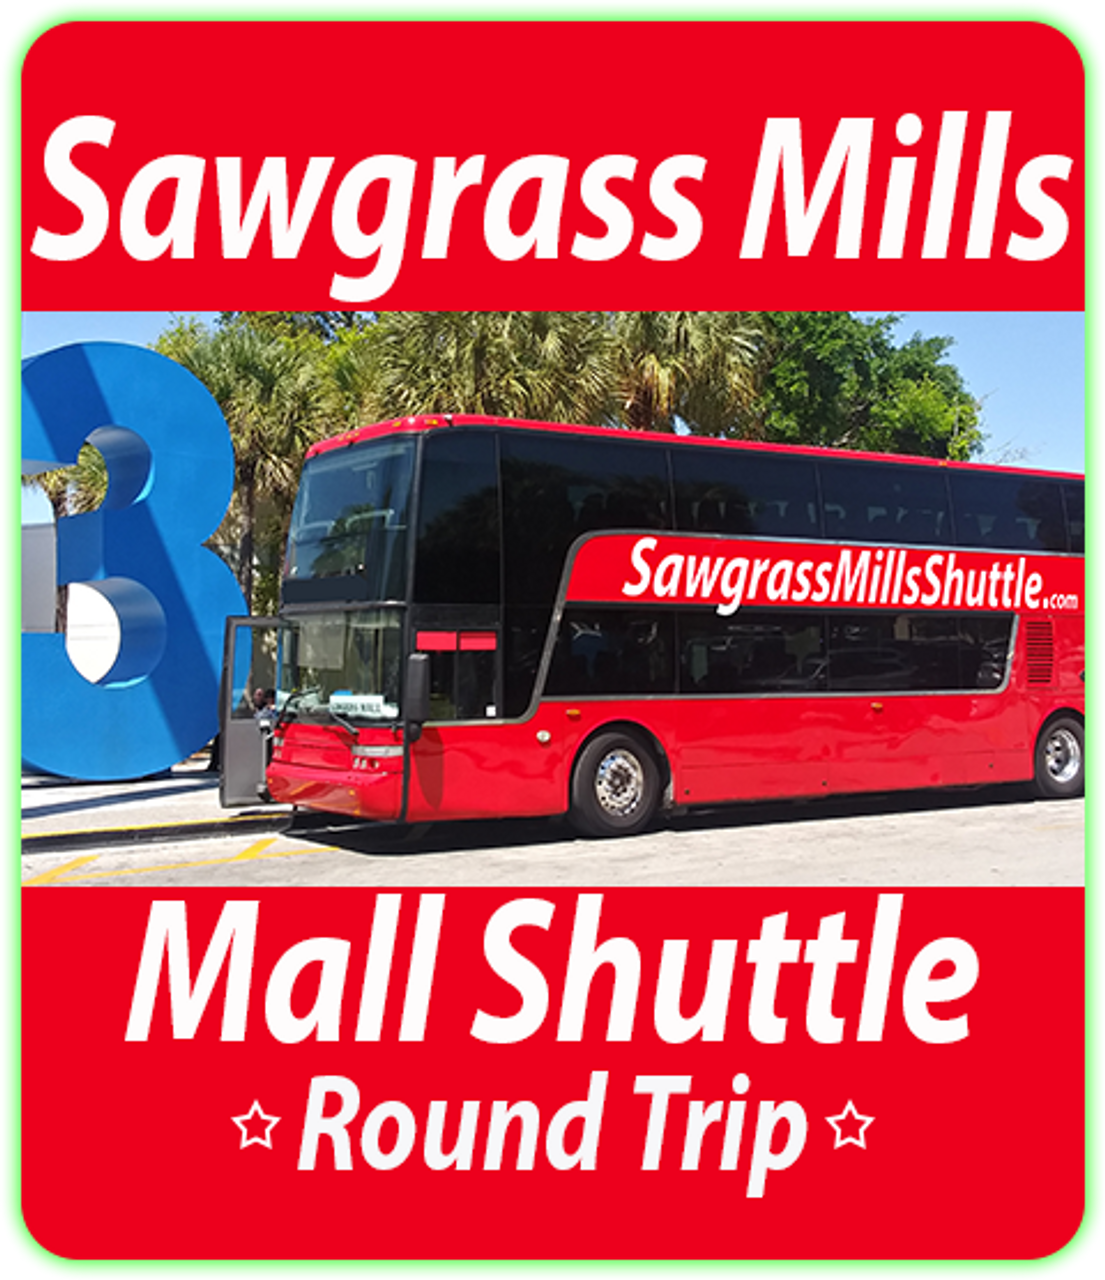 Sawgrass Mall Shuttle Round-Trip $19